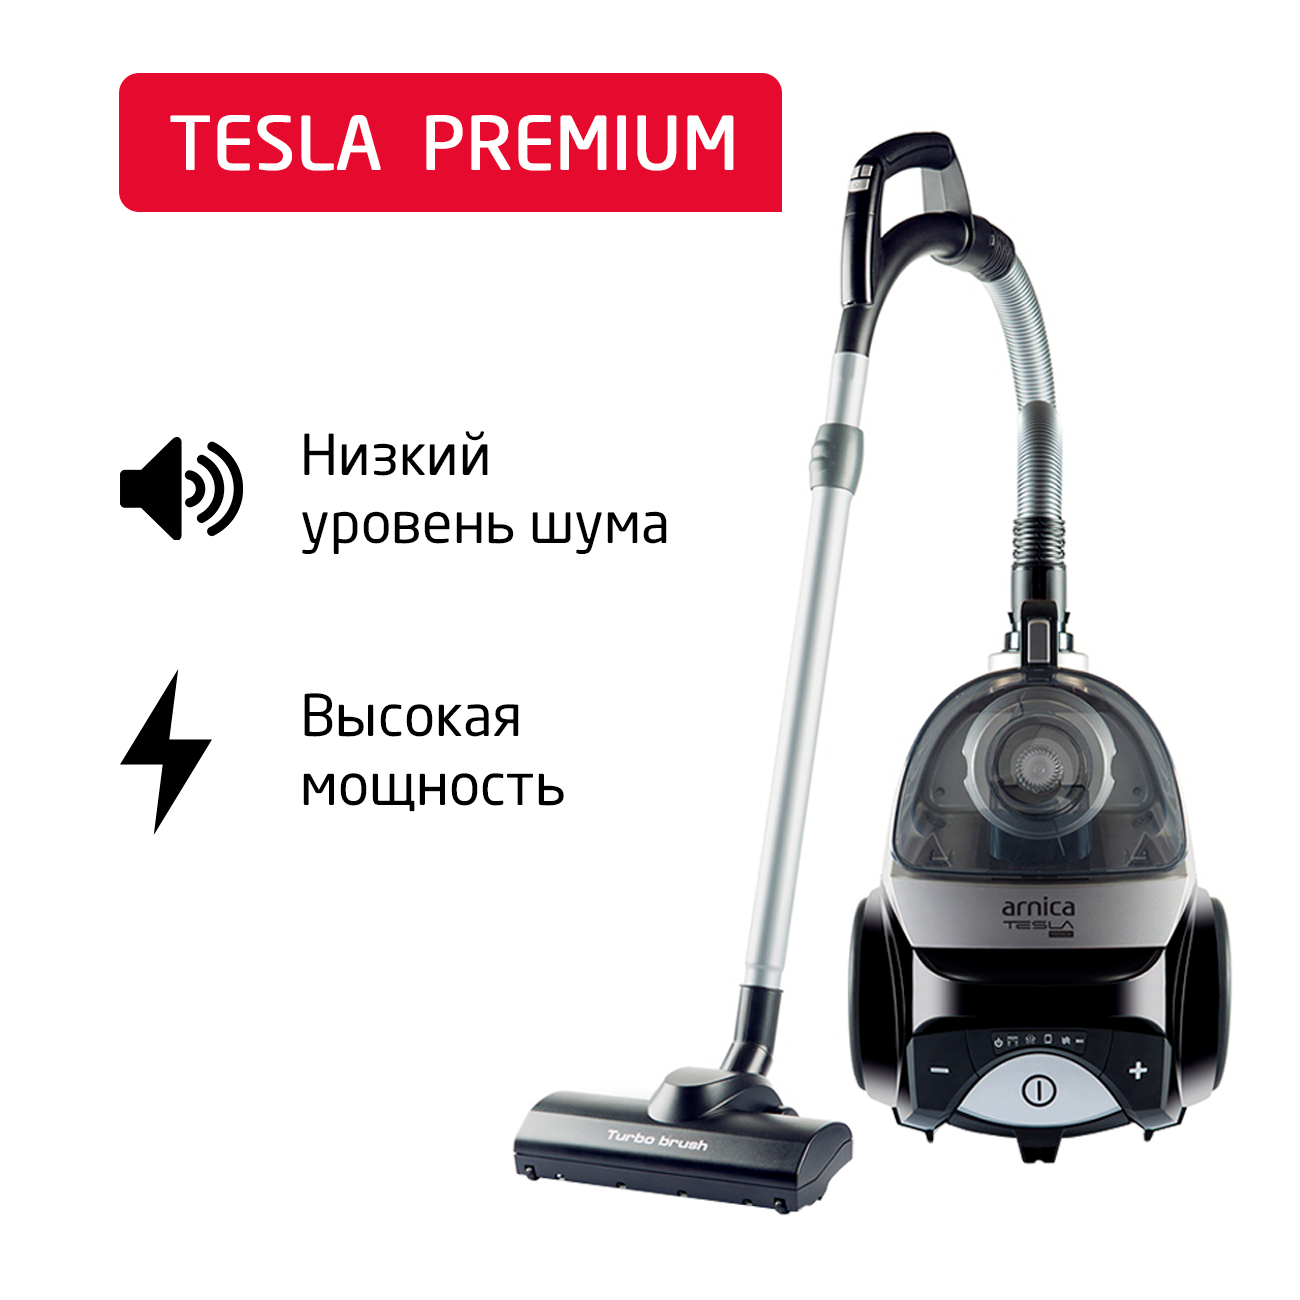 Пылесос ARNICA Tesla Premium серебристый, черный пылесос arnica nika белый